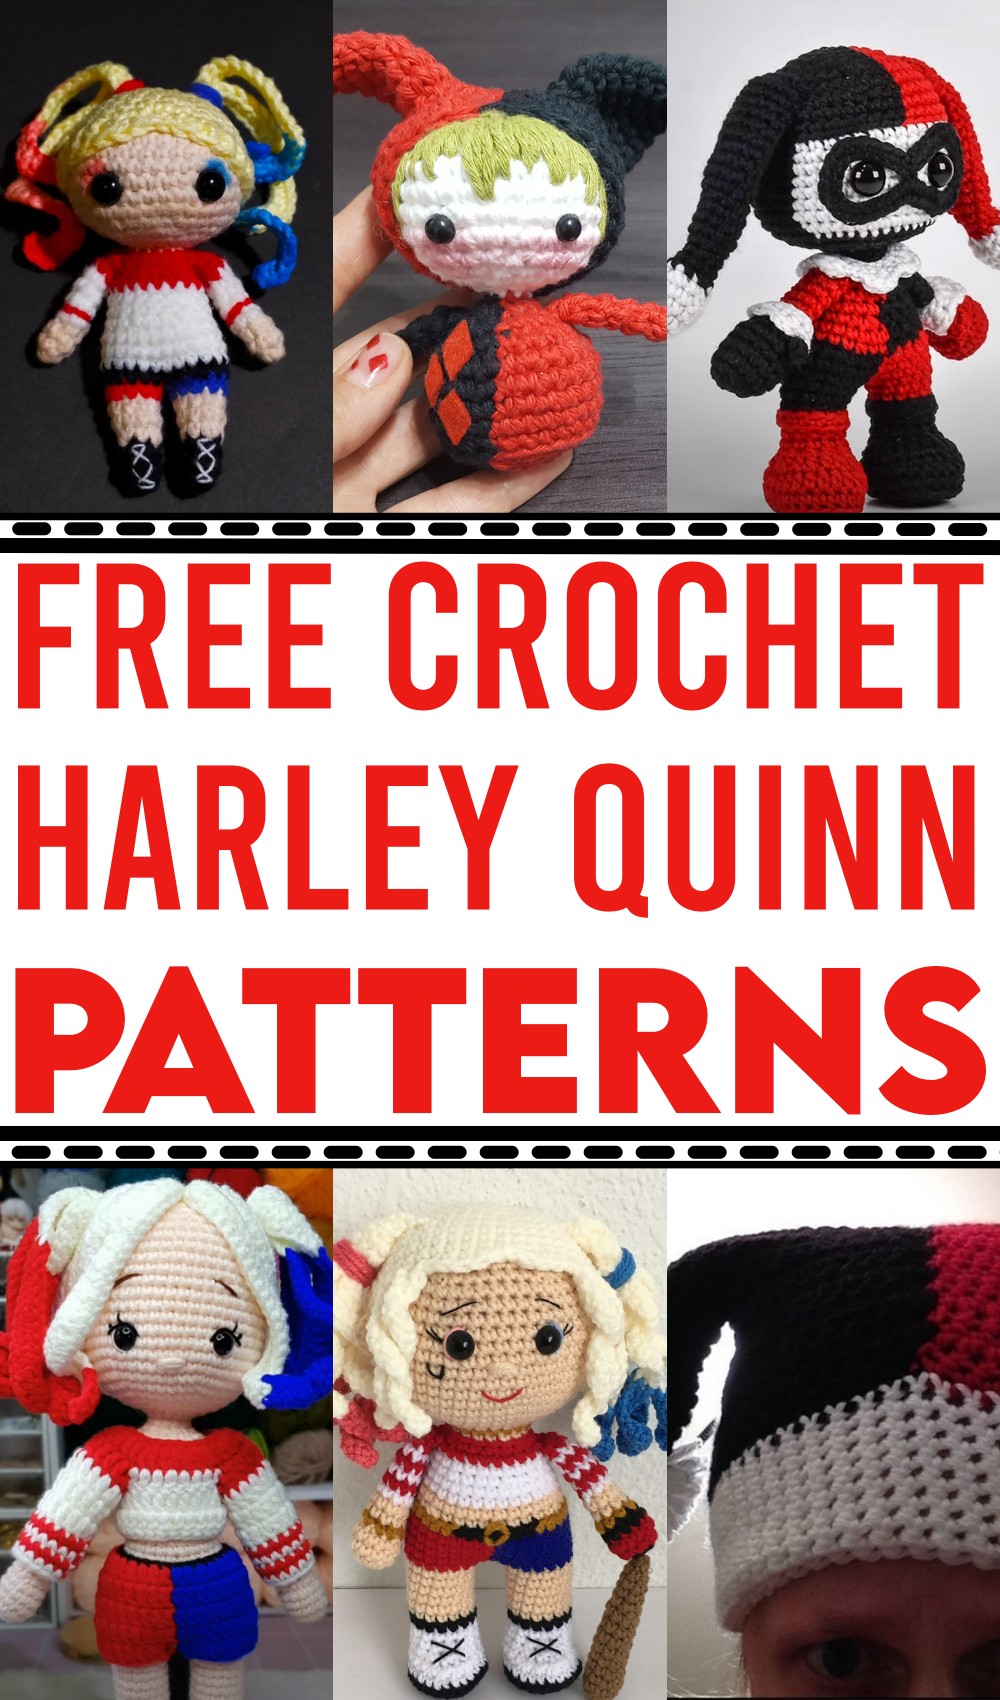 Crochet Harley Quinn Patterns